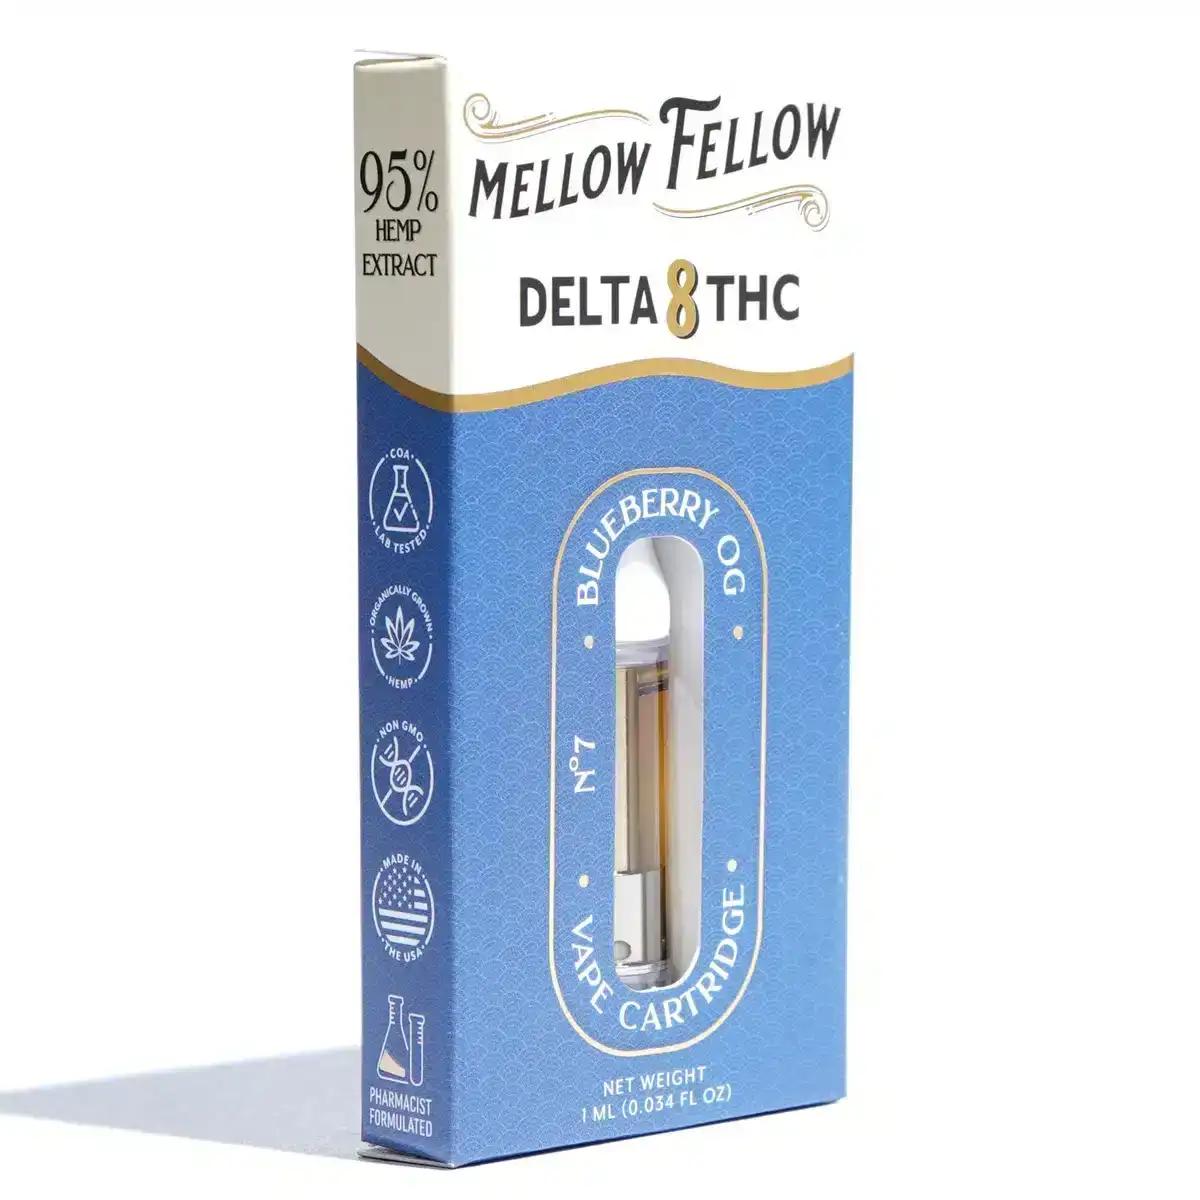 Image of Mellow Fellow Delta 8 Vape Cartridges 1g - Blueberry OG